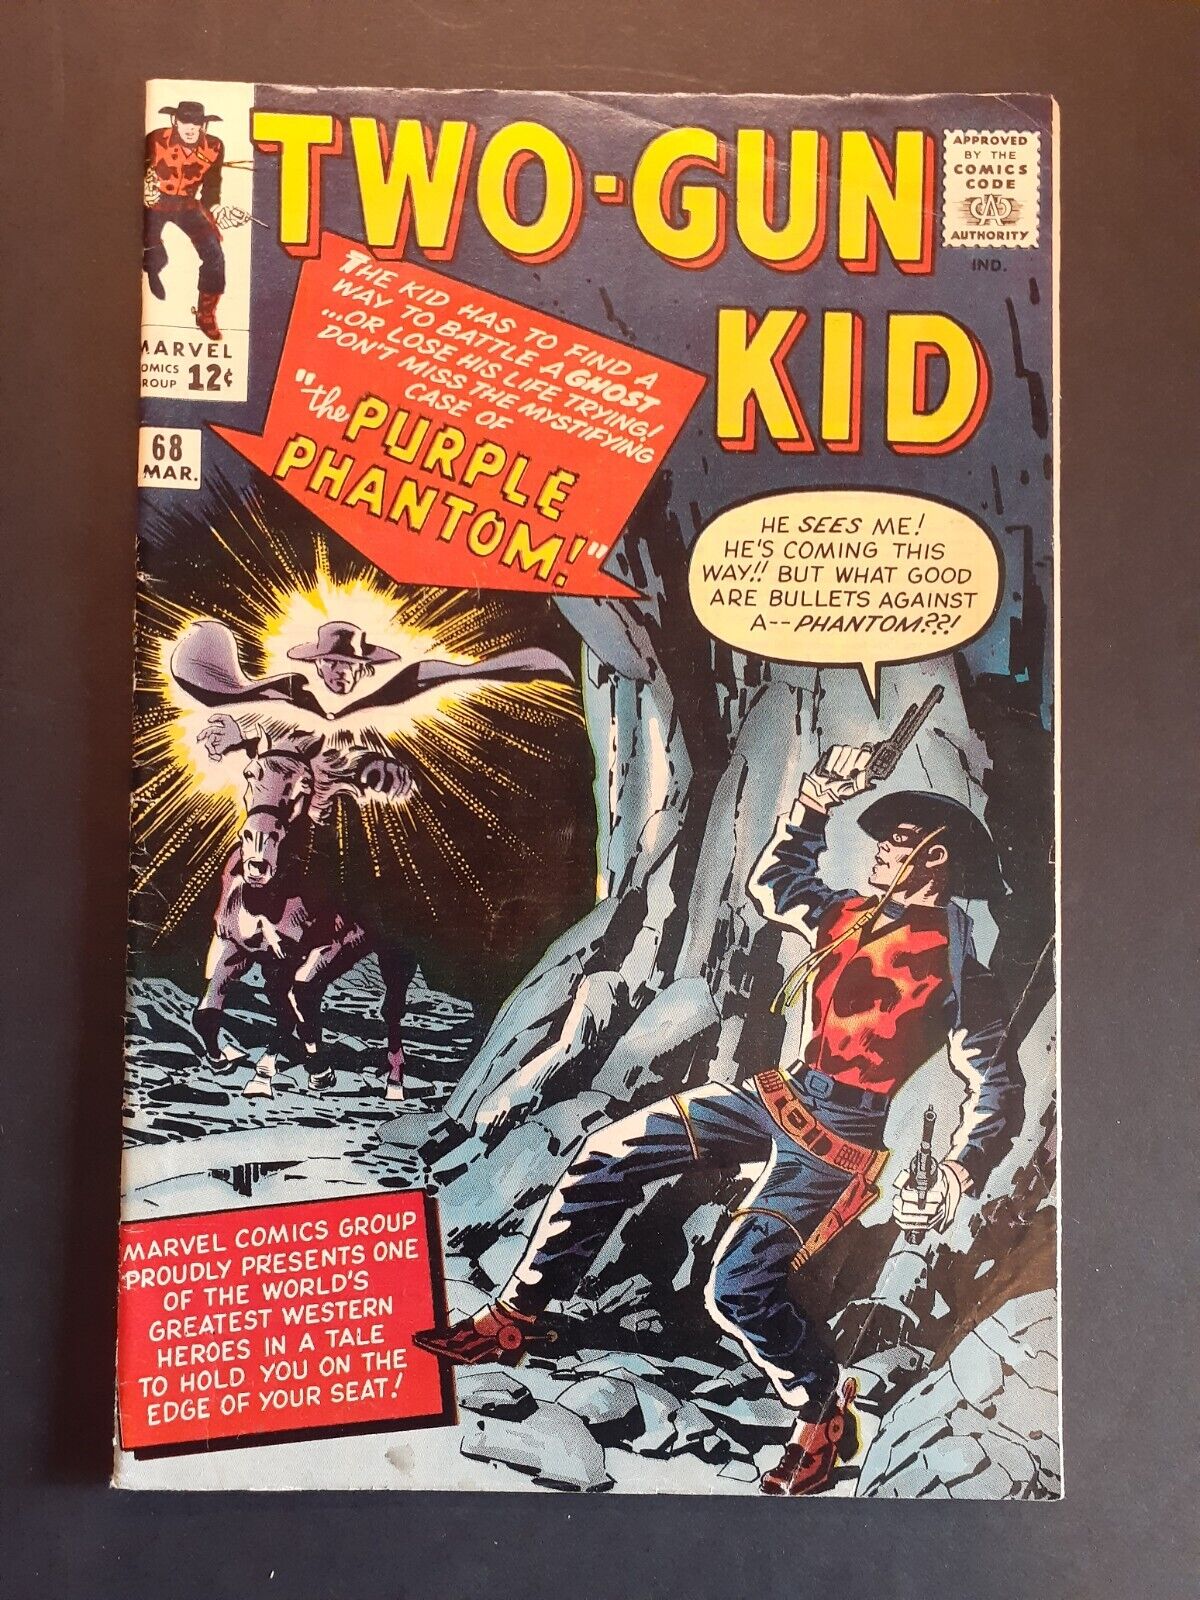 Two-Gun Kid # 68 (Marvel) The Purple Phantom by Stan Lee & Dick Ayers (1963)